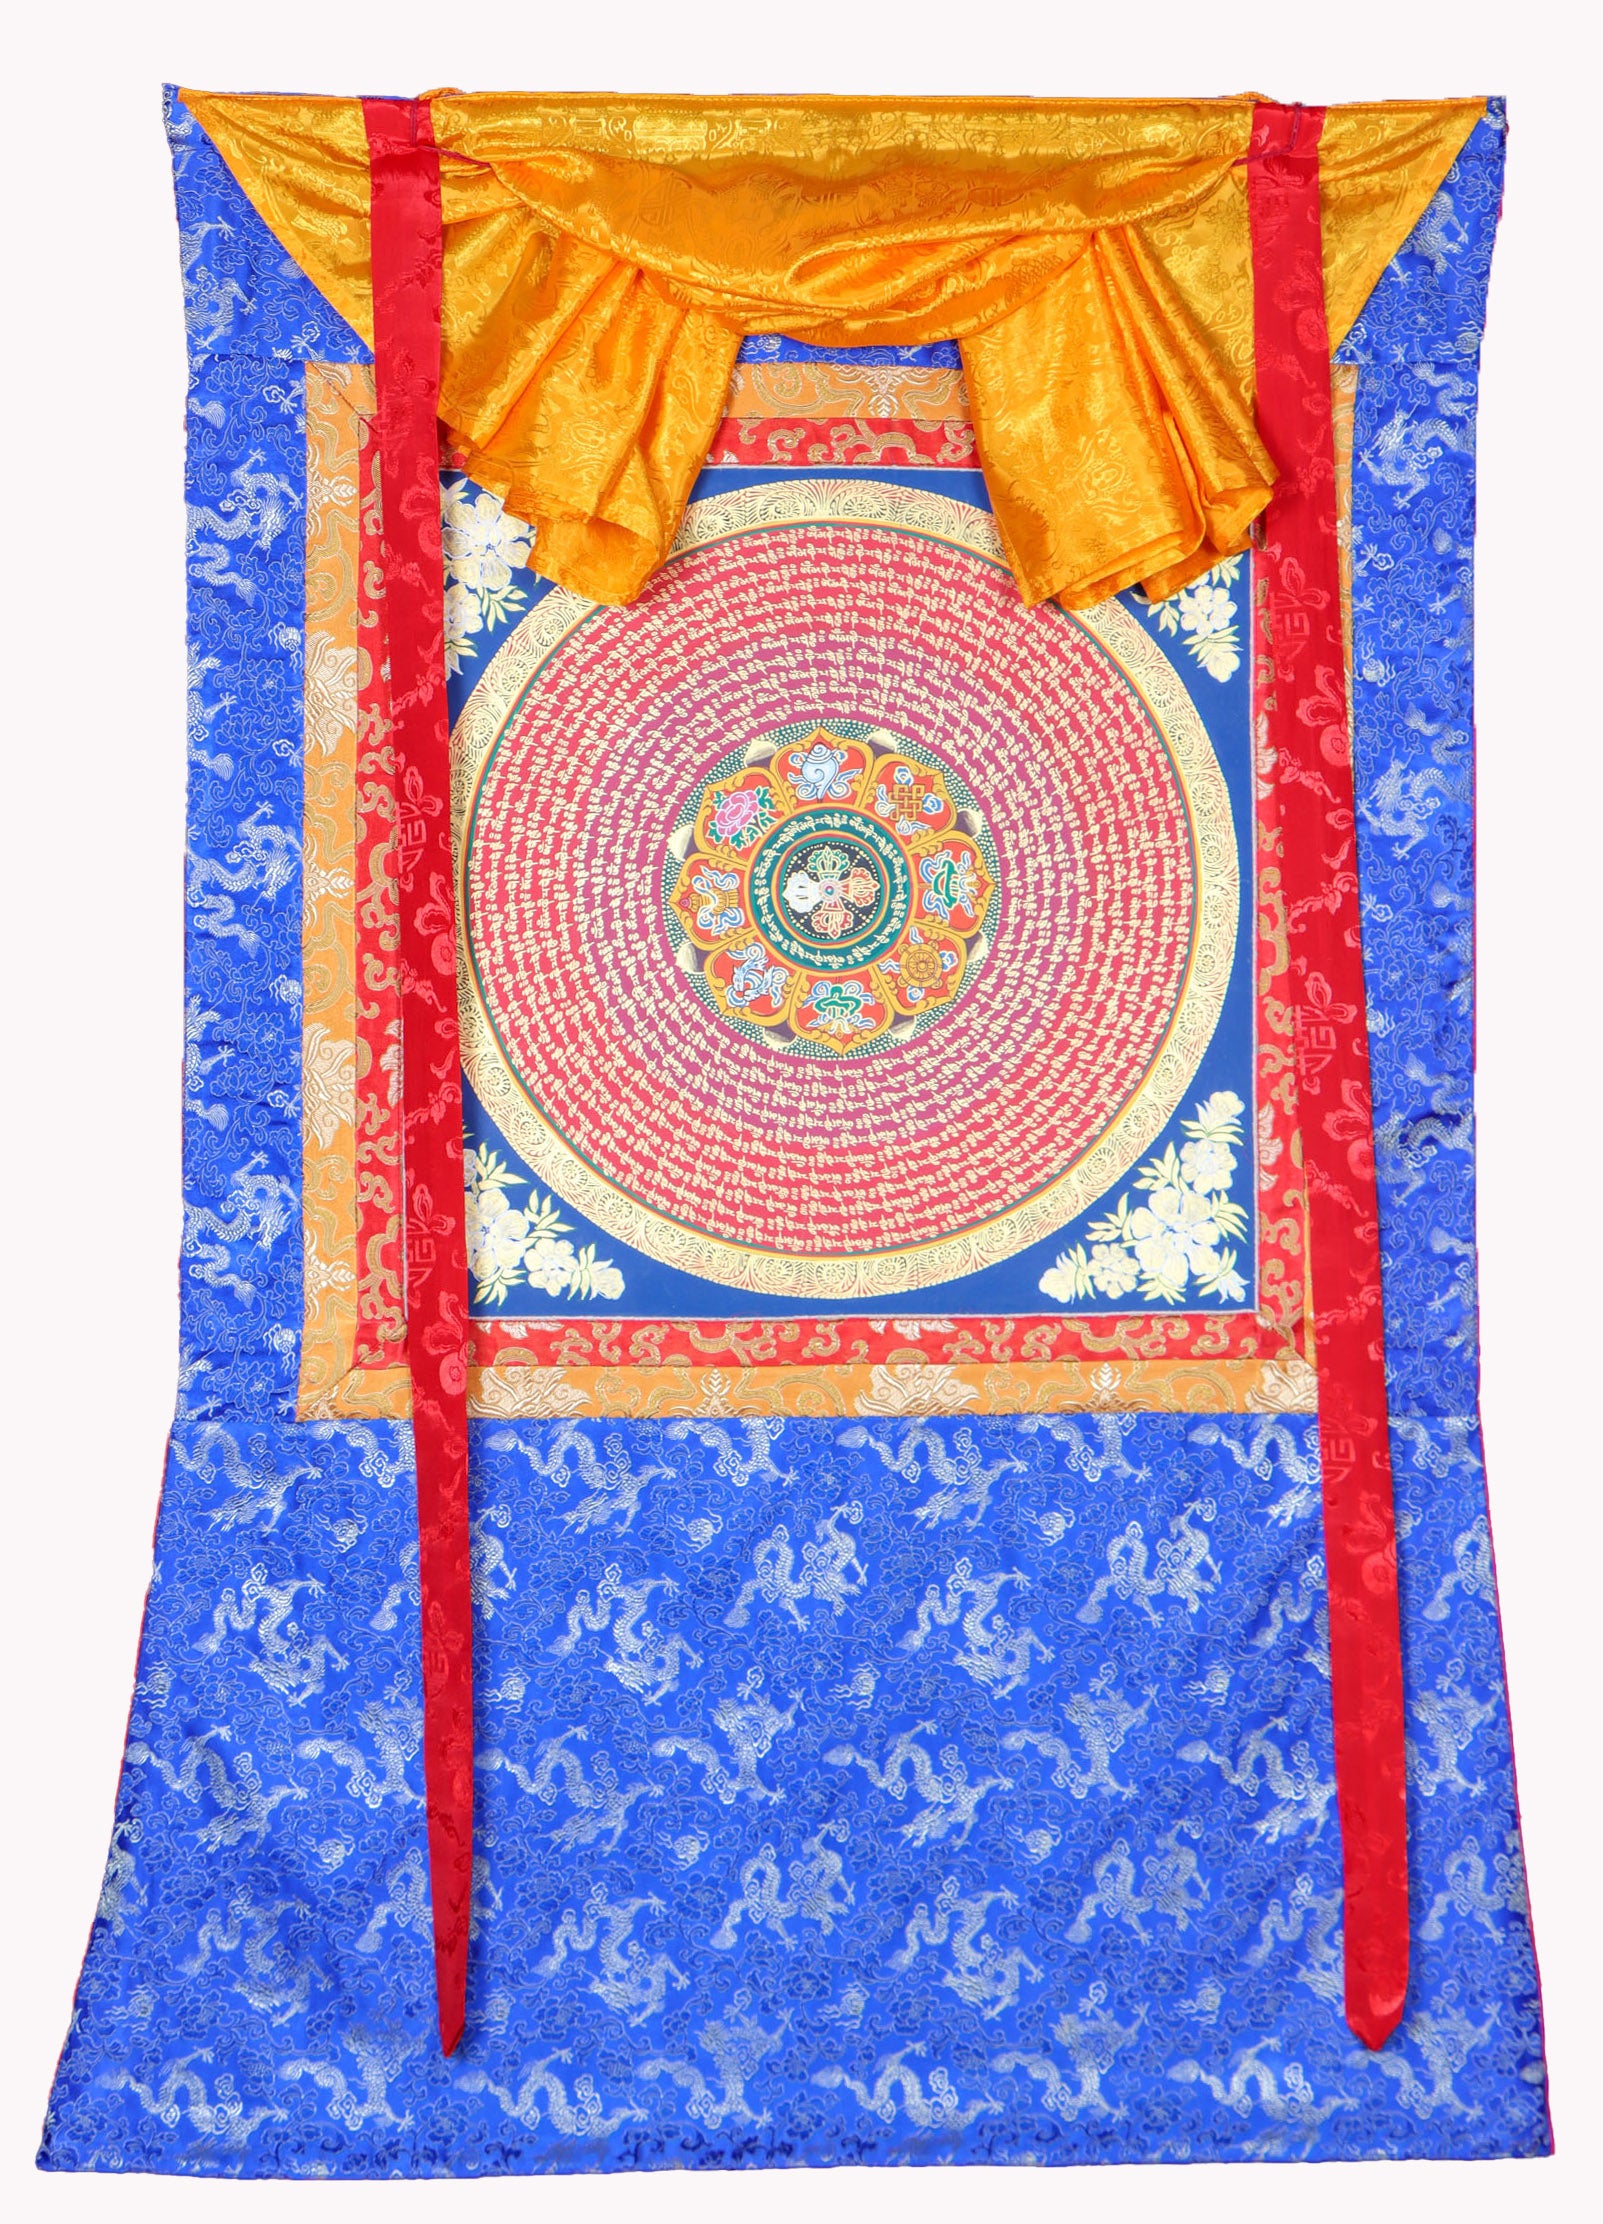 Mantra Mandala Brocade Thangka Painting